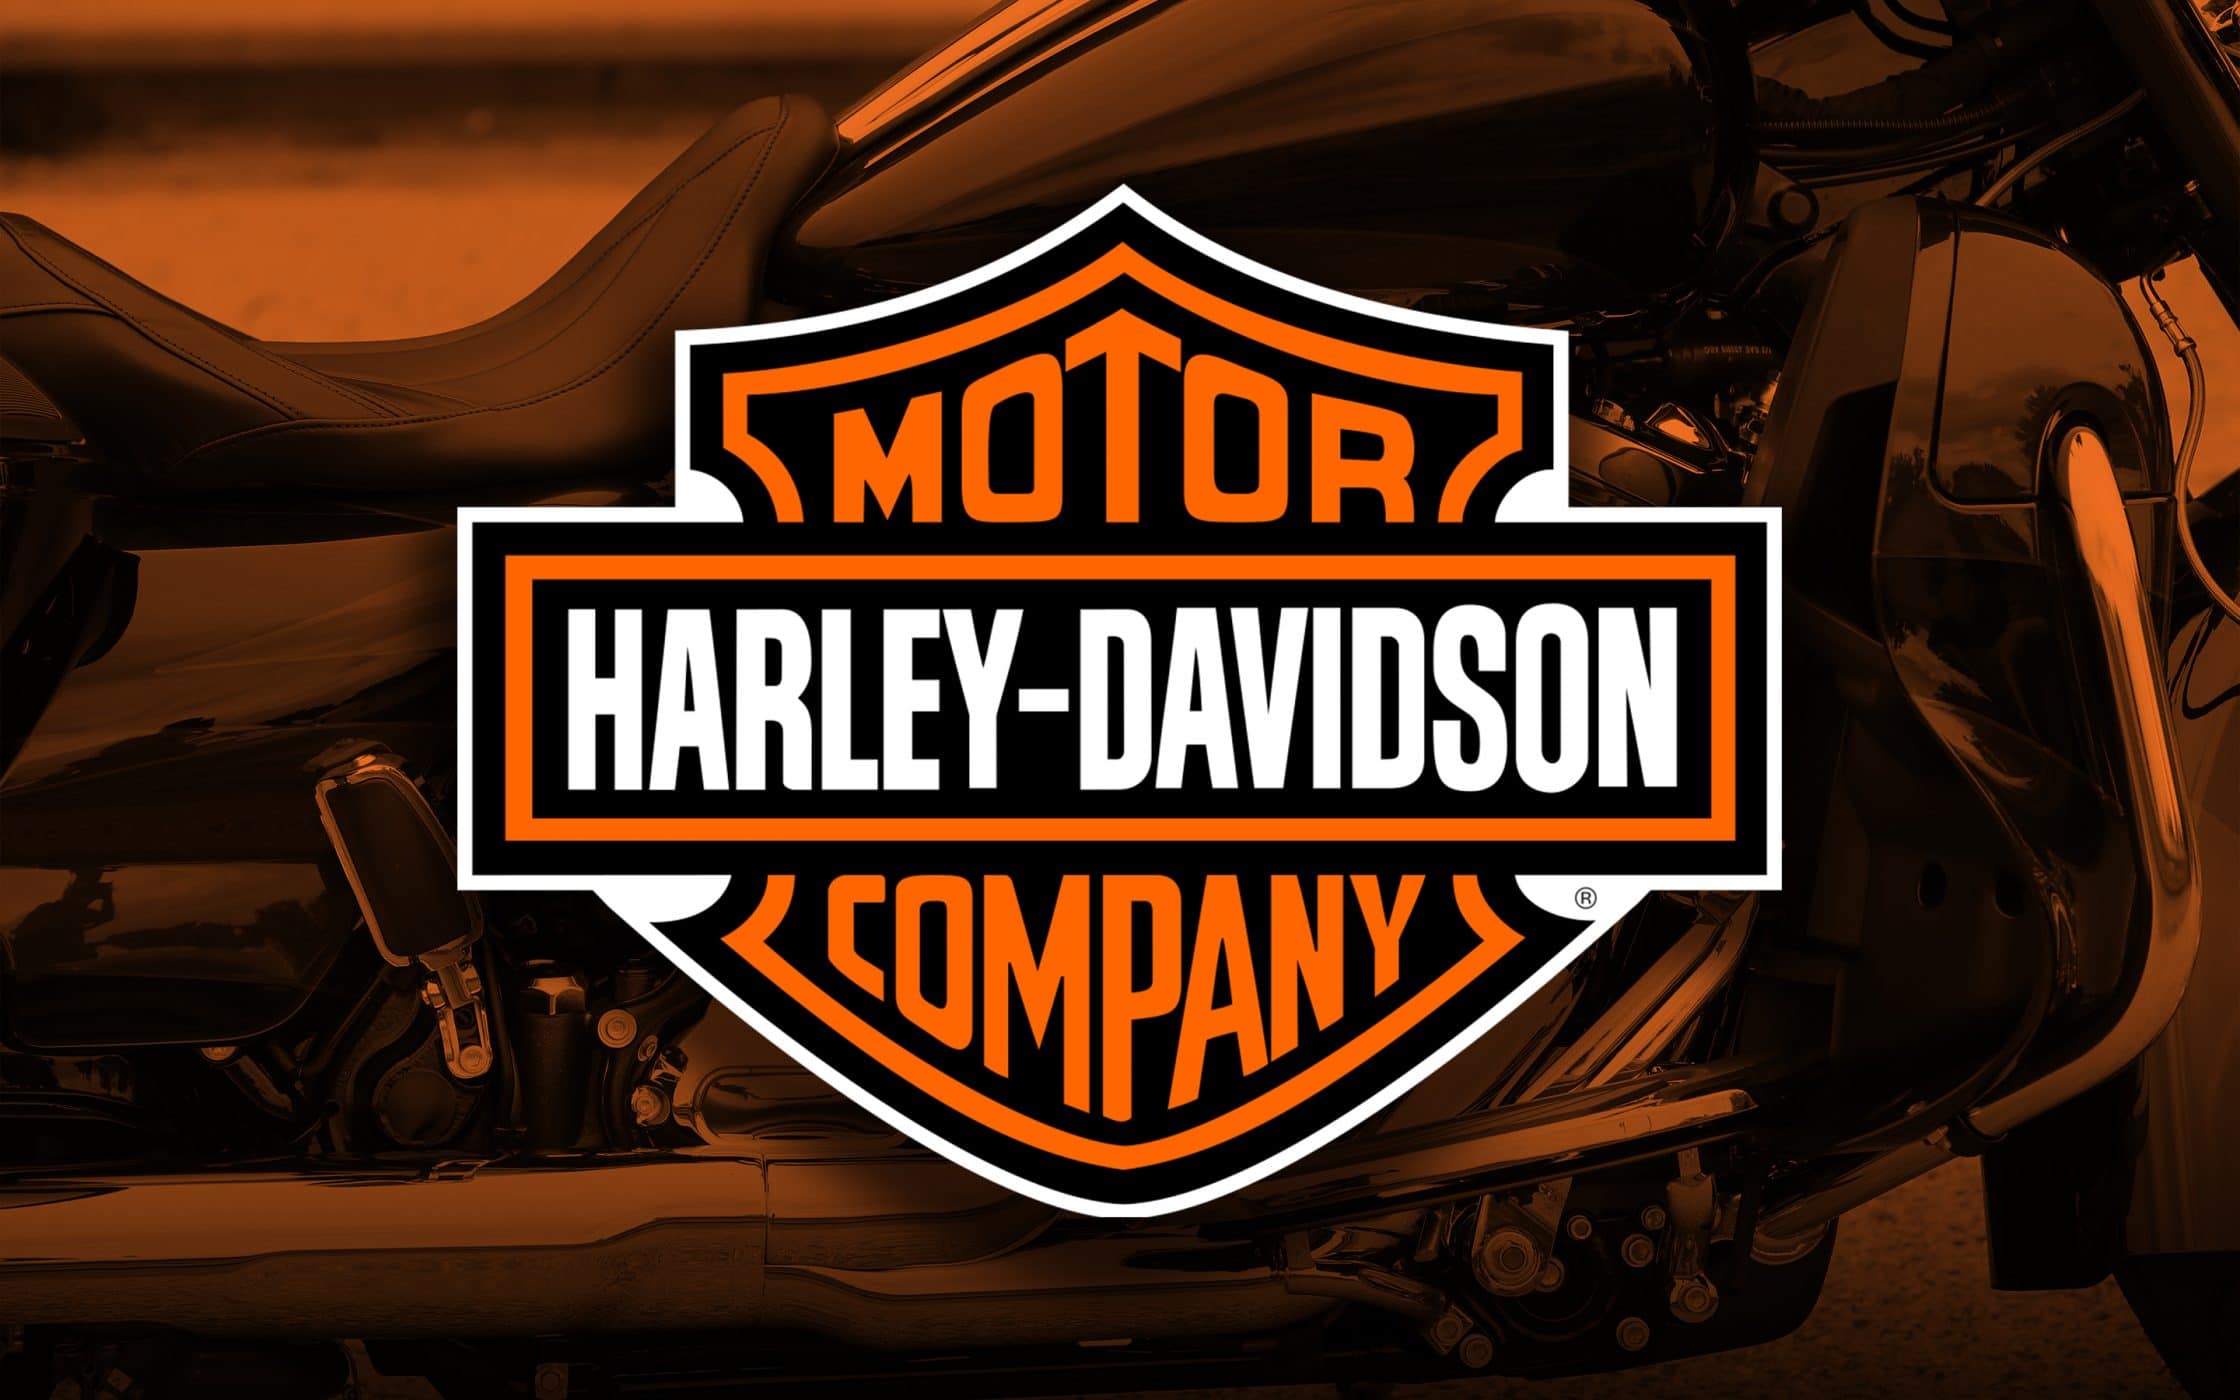 Motor Harley Davidson бренд